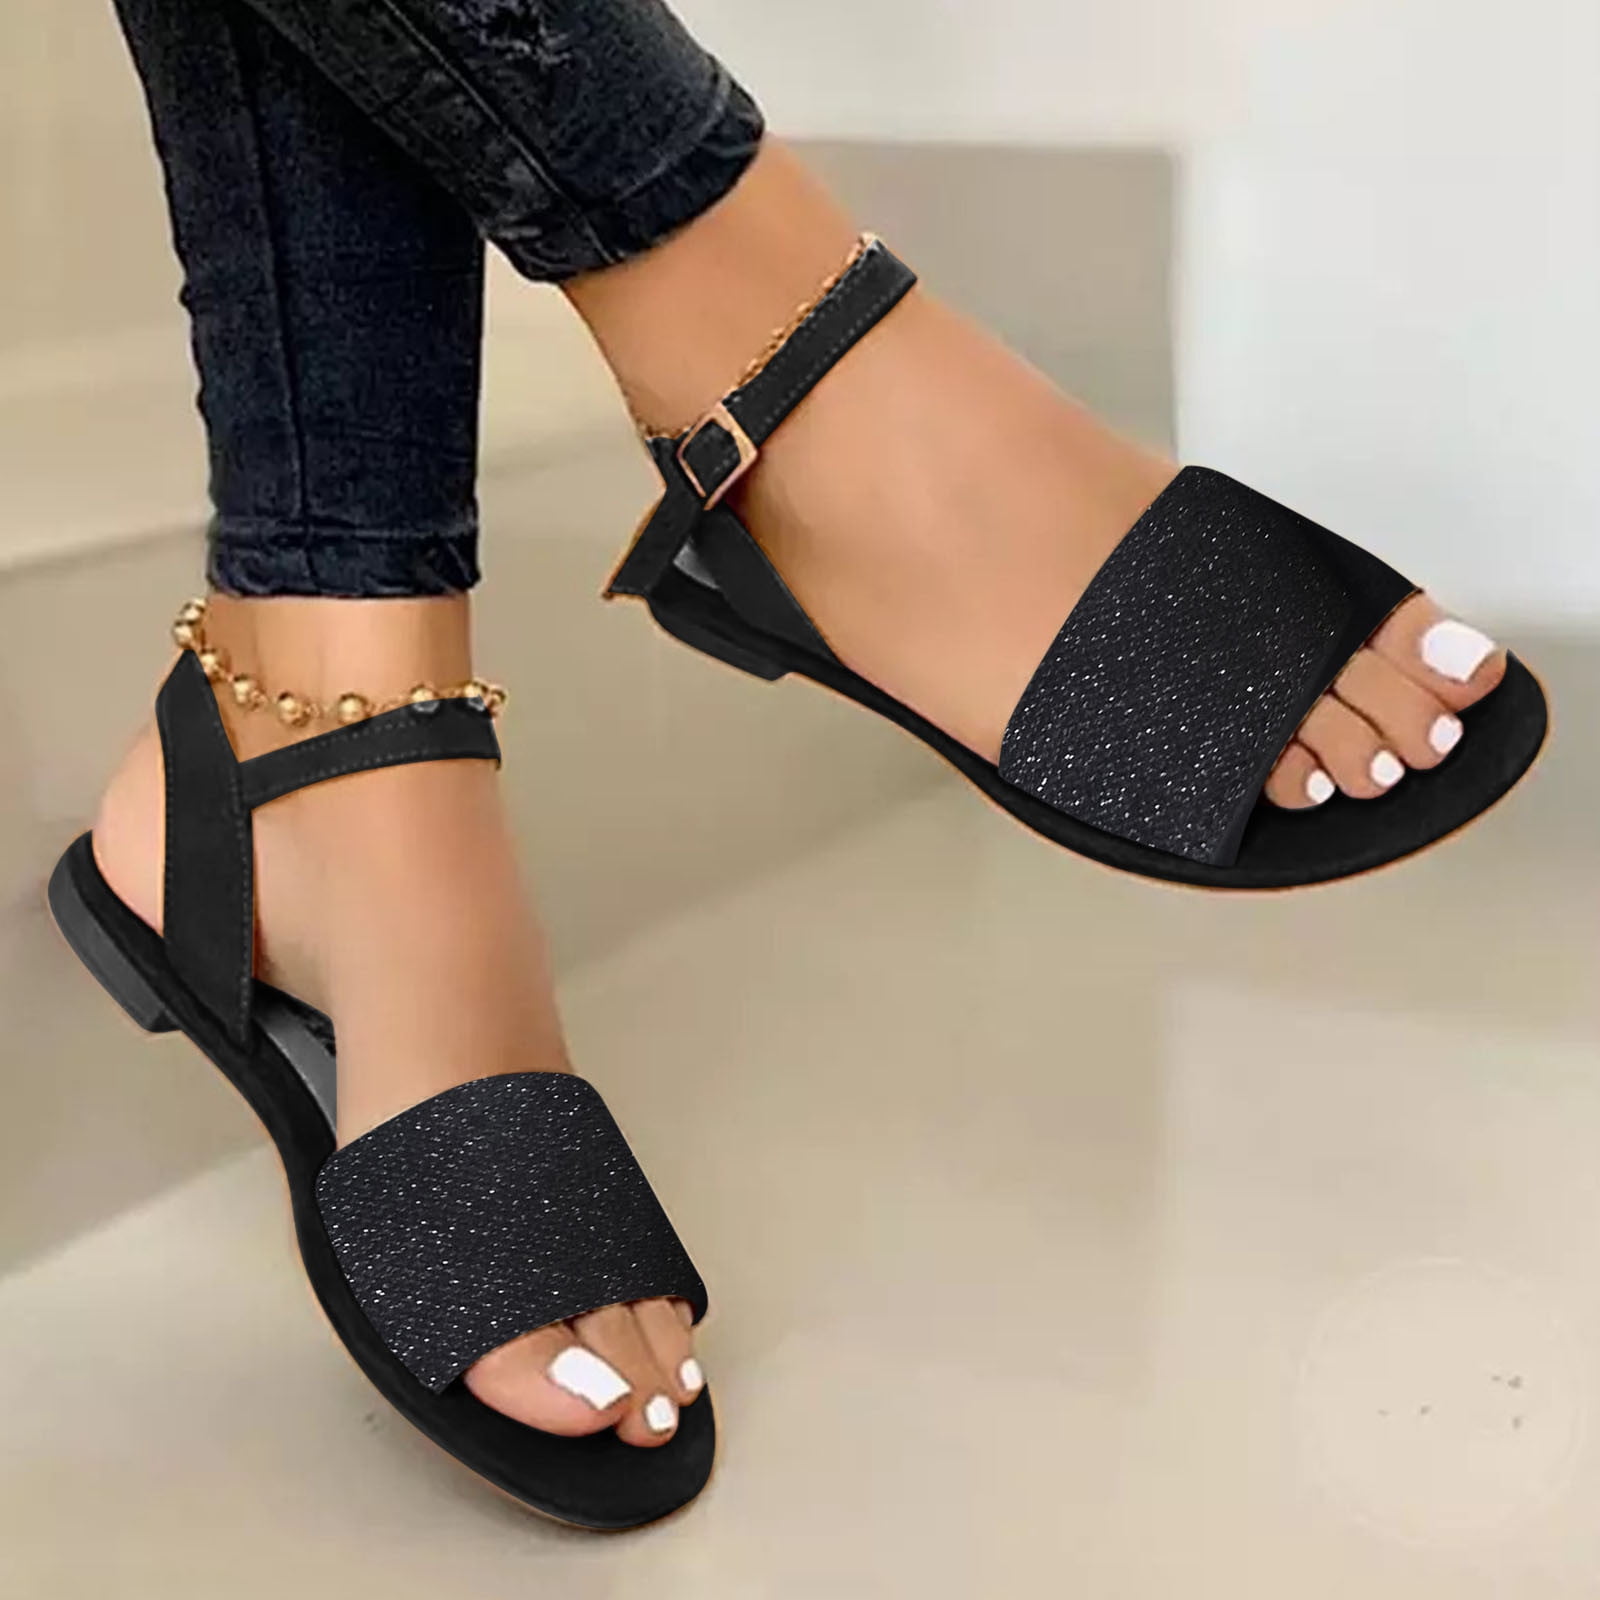 Akiihool Sandals Women Wide Feet Women's Flat Sandals Strappy